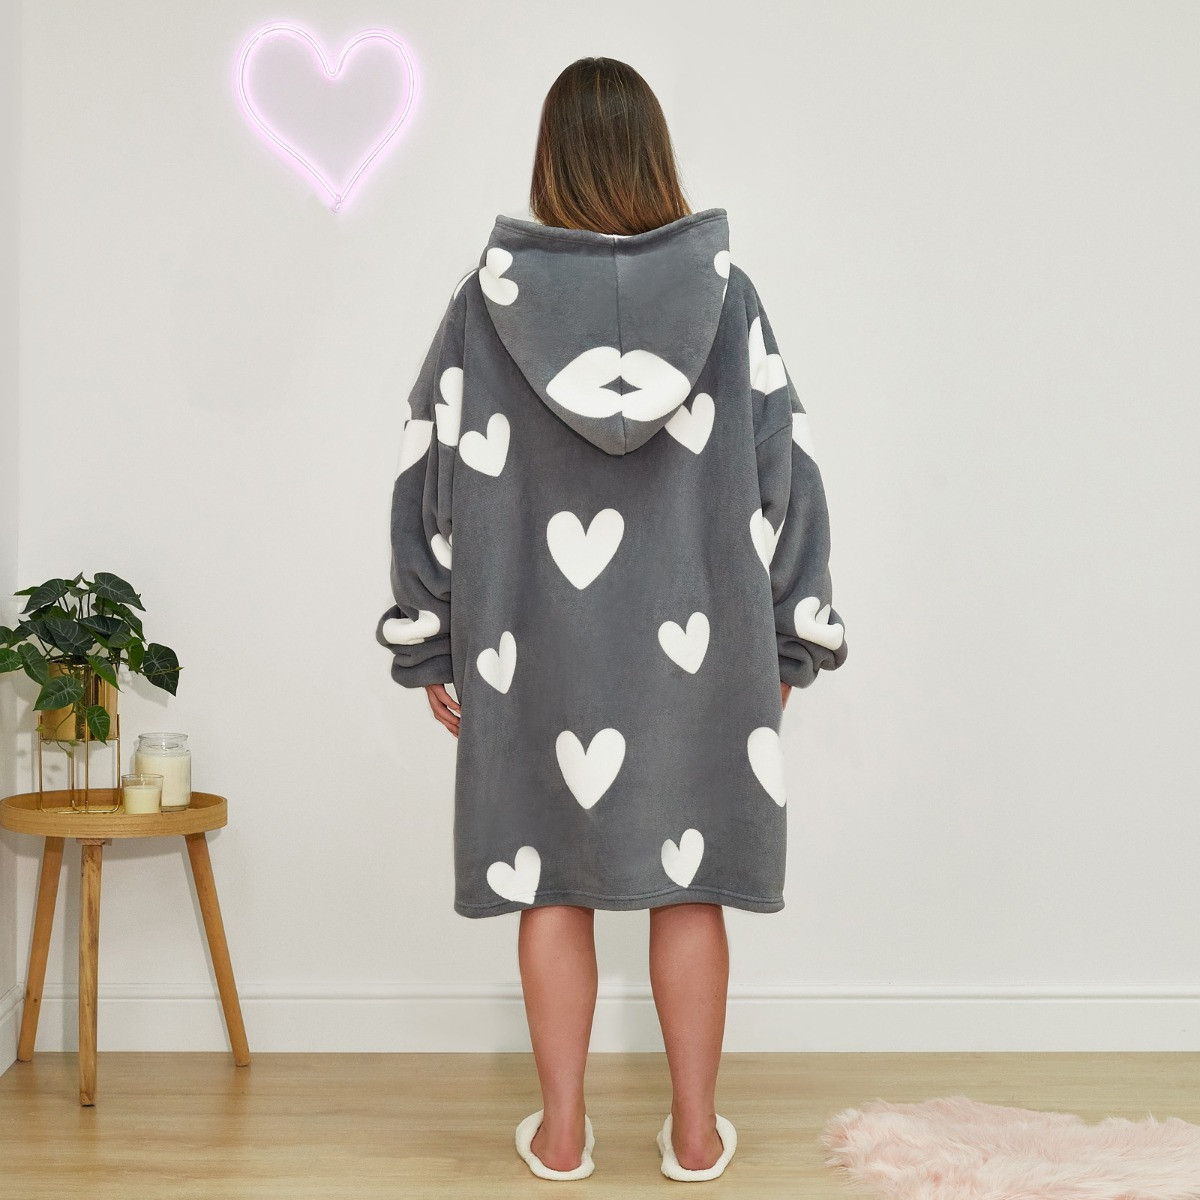 Dreamscene Heart Print Hoodie Blanket - Charcoal>